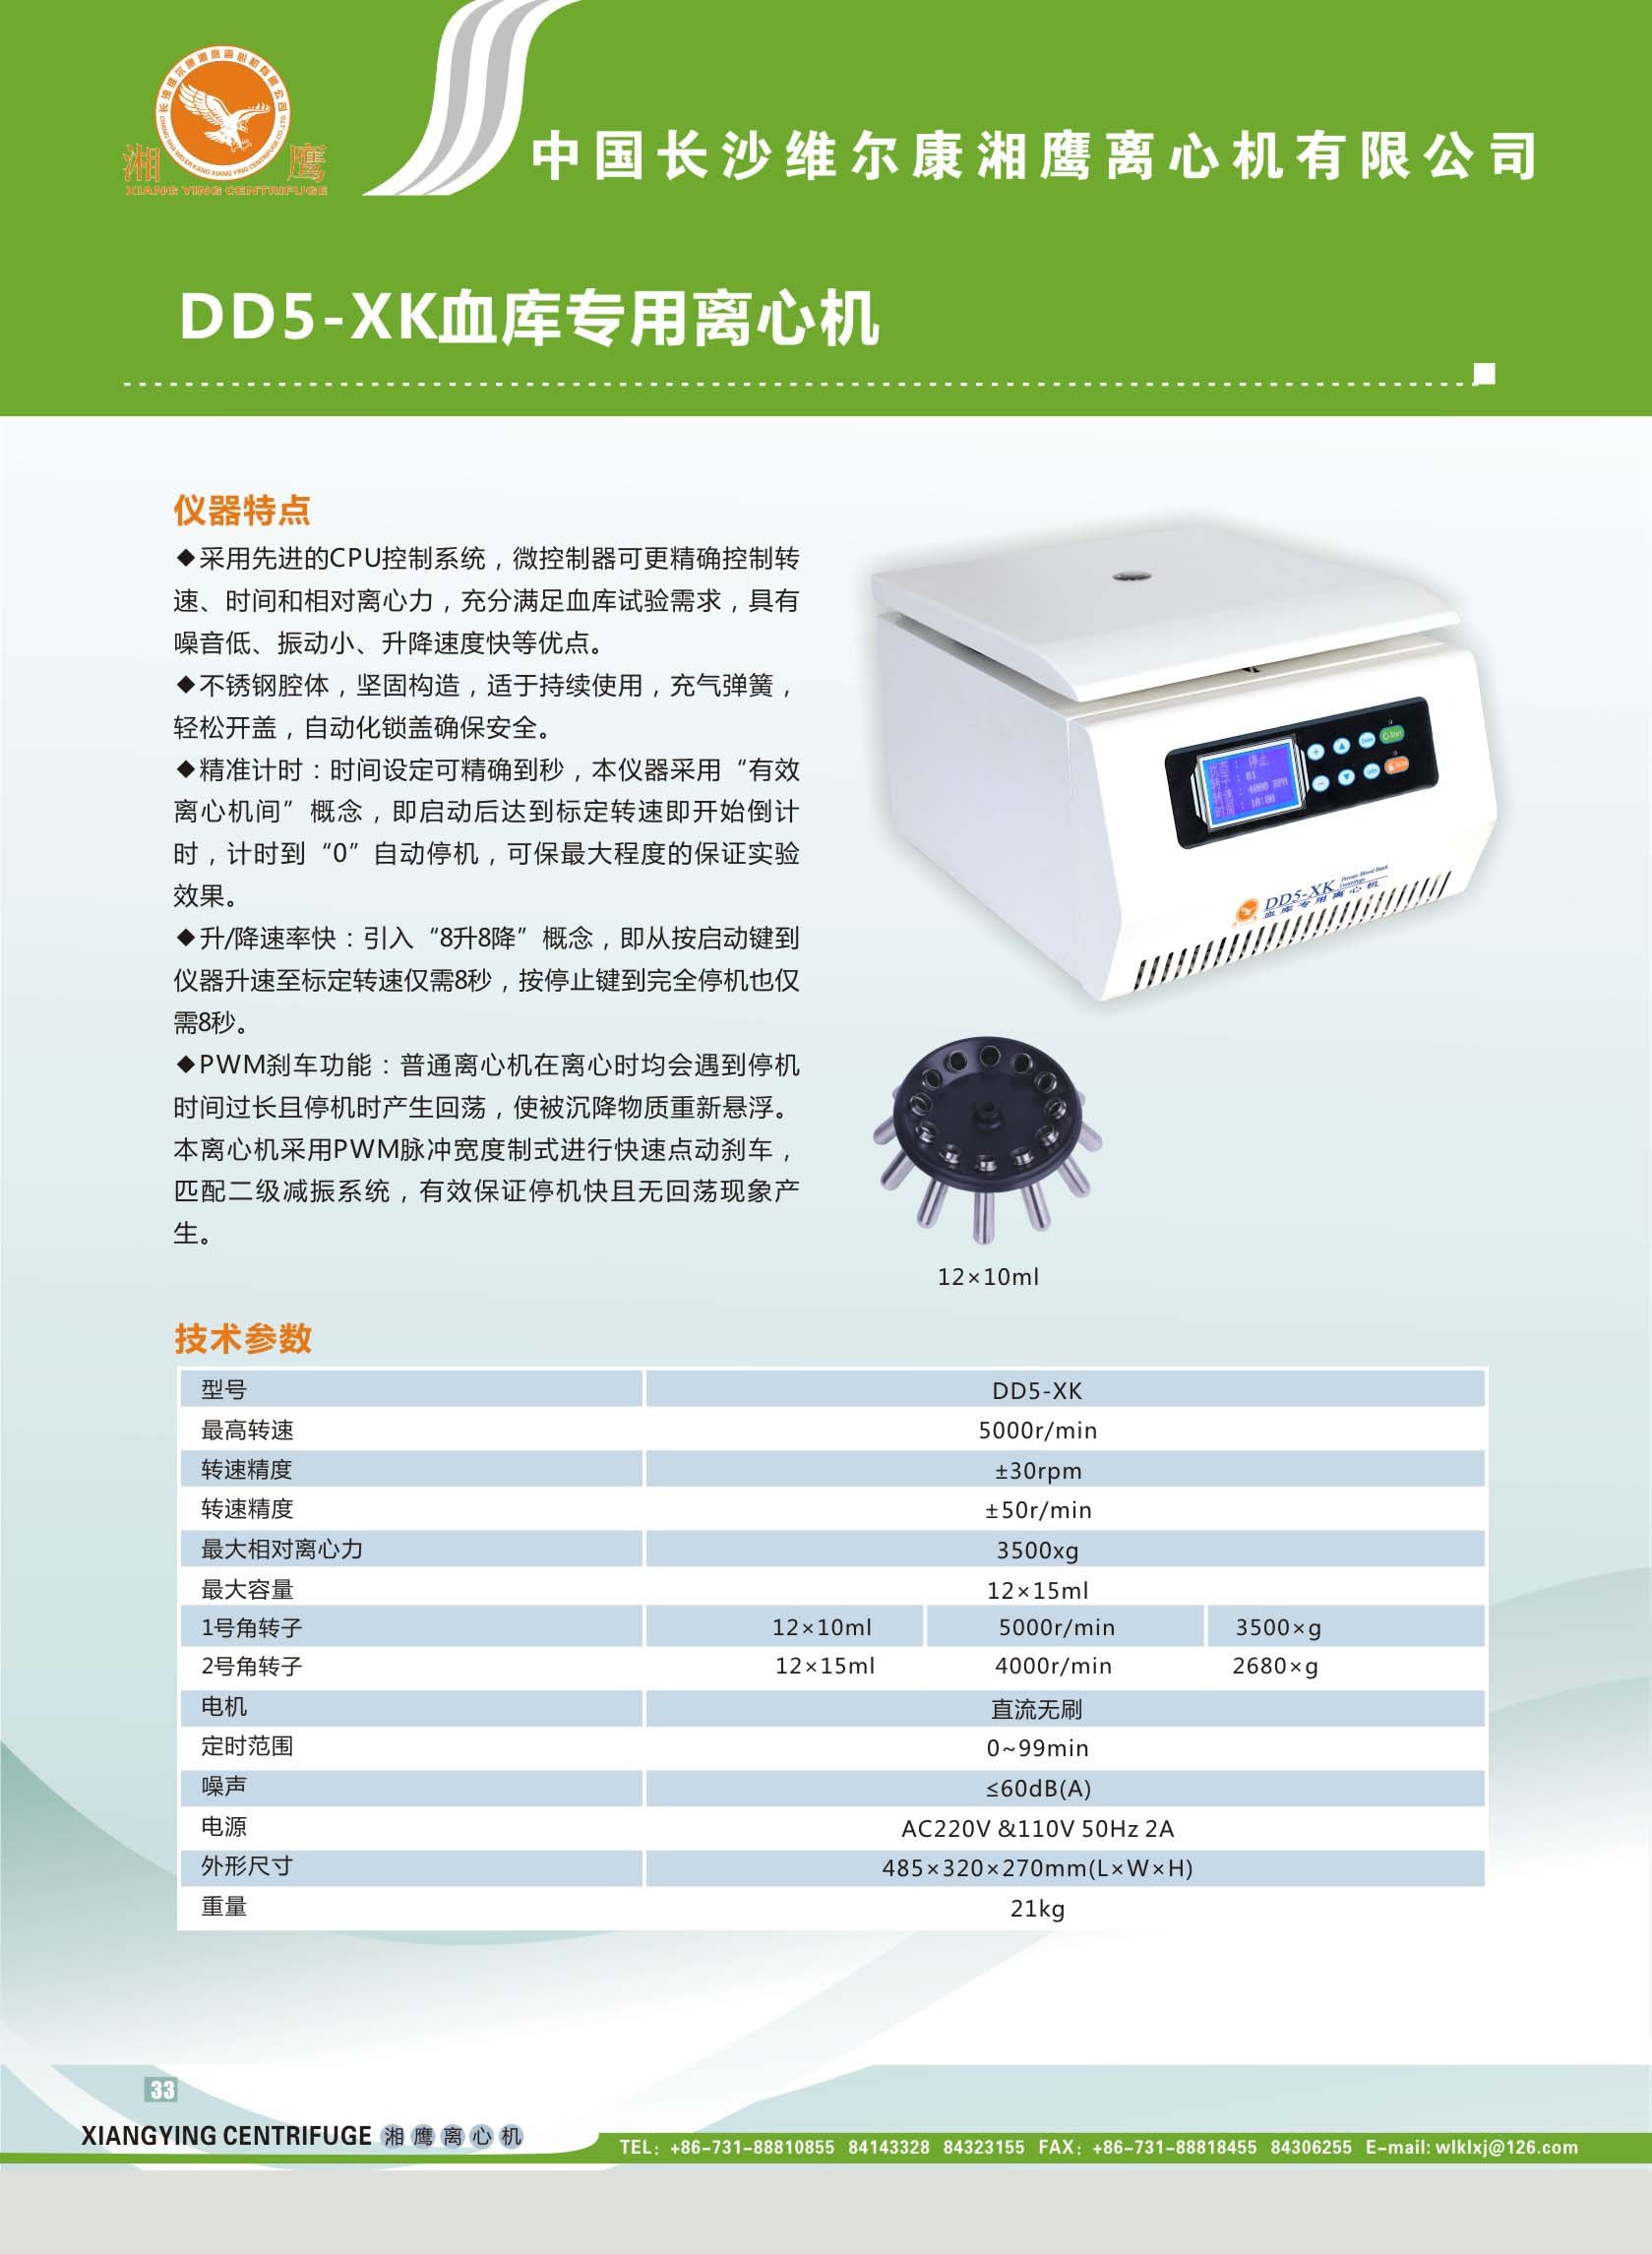 DD5-XK血库专用离心机长沙维尔康湘鹰离心机有限公司